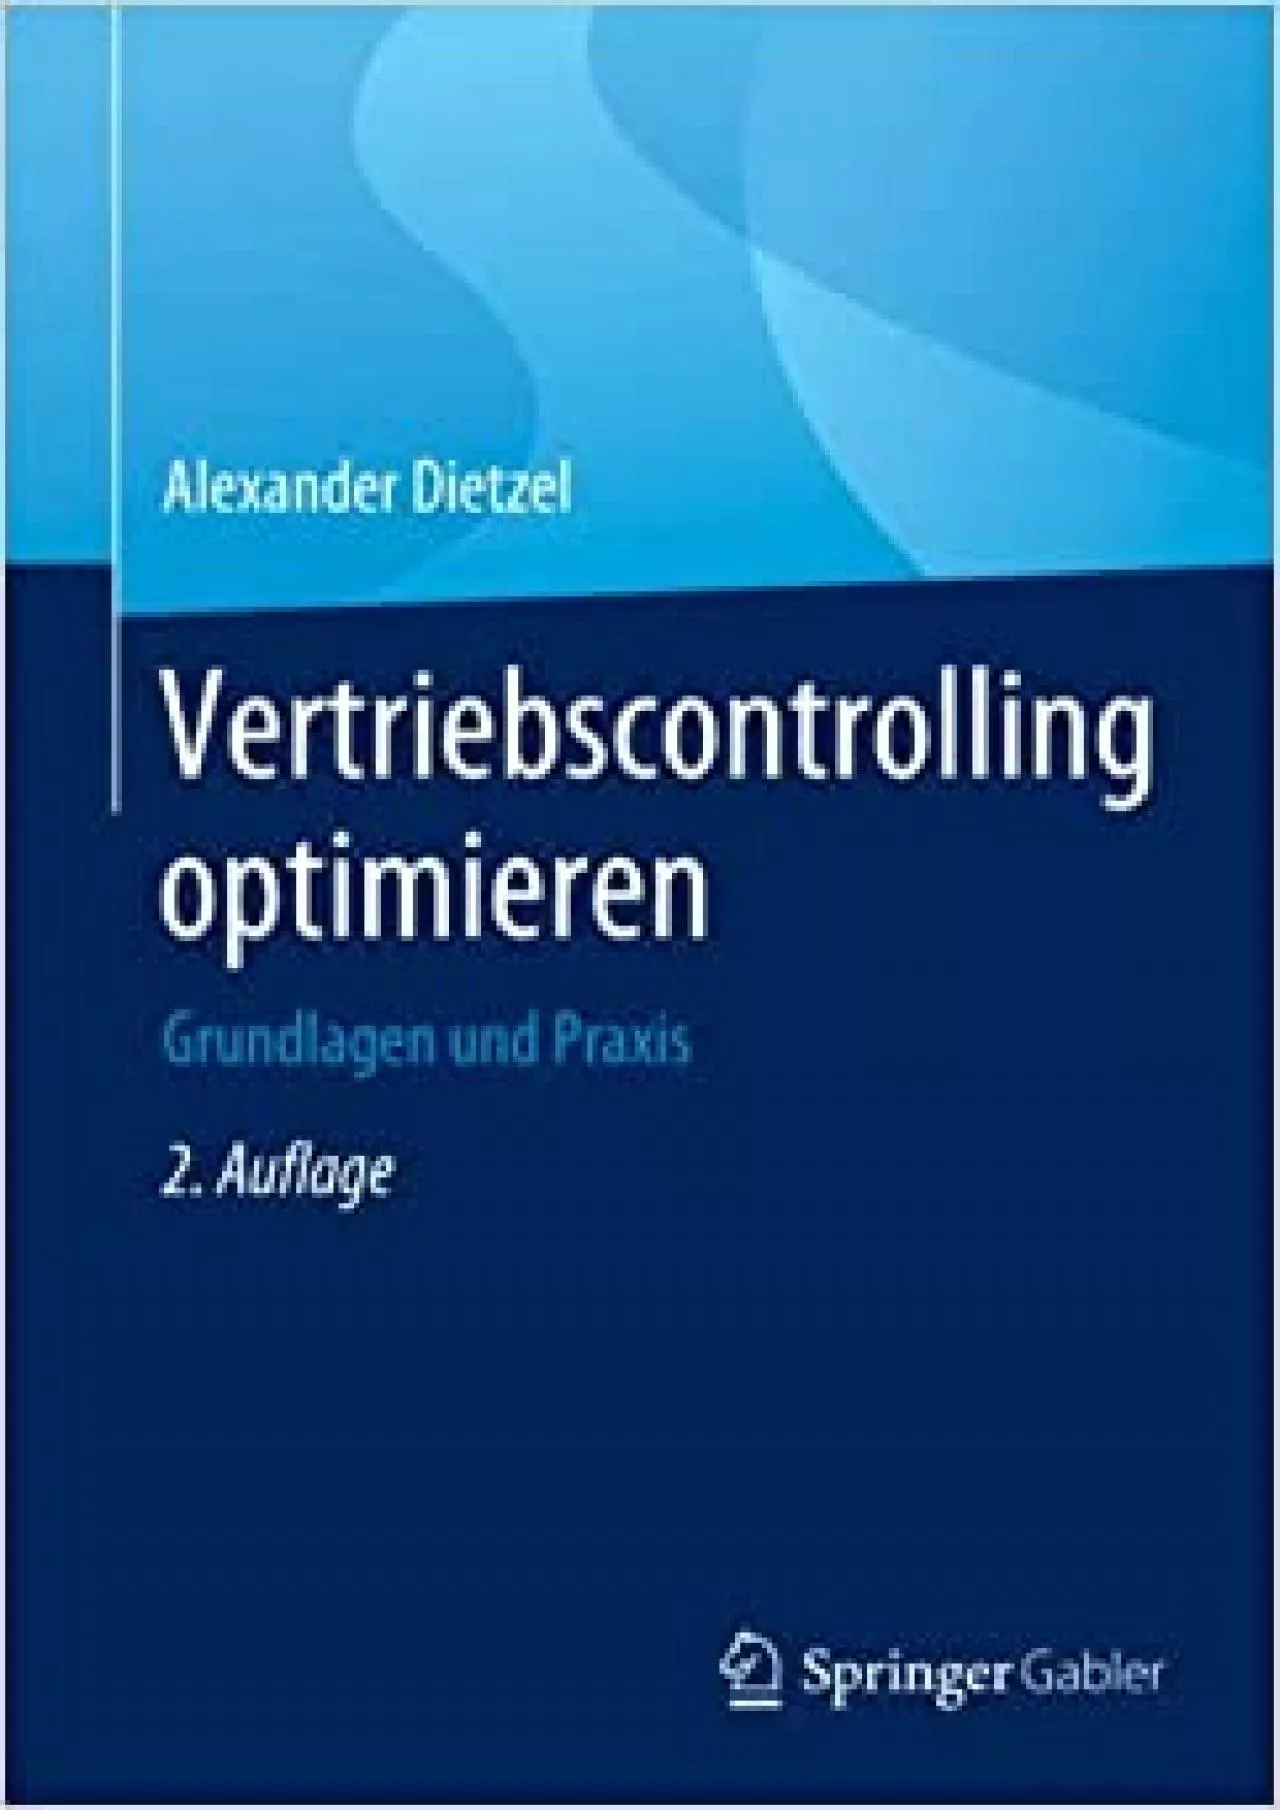 Vertriebscontrolling optimieren: Grundlagen und Praxis (German Edition)